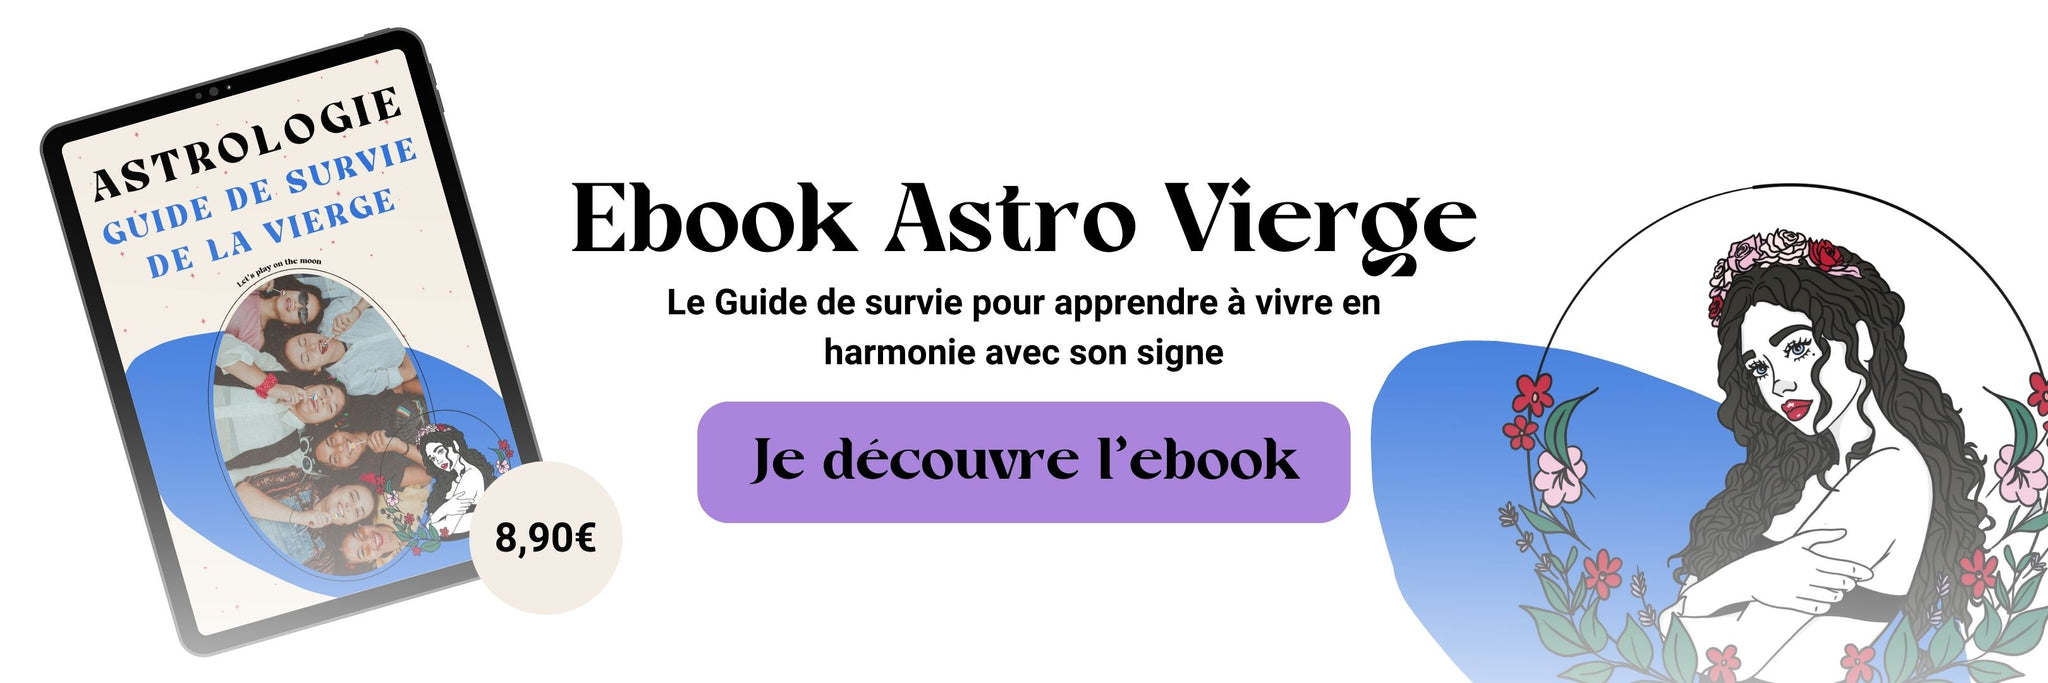 Ebook Astro de la Vierge